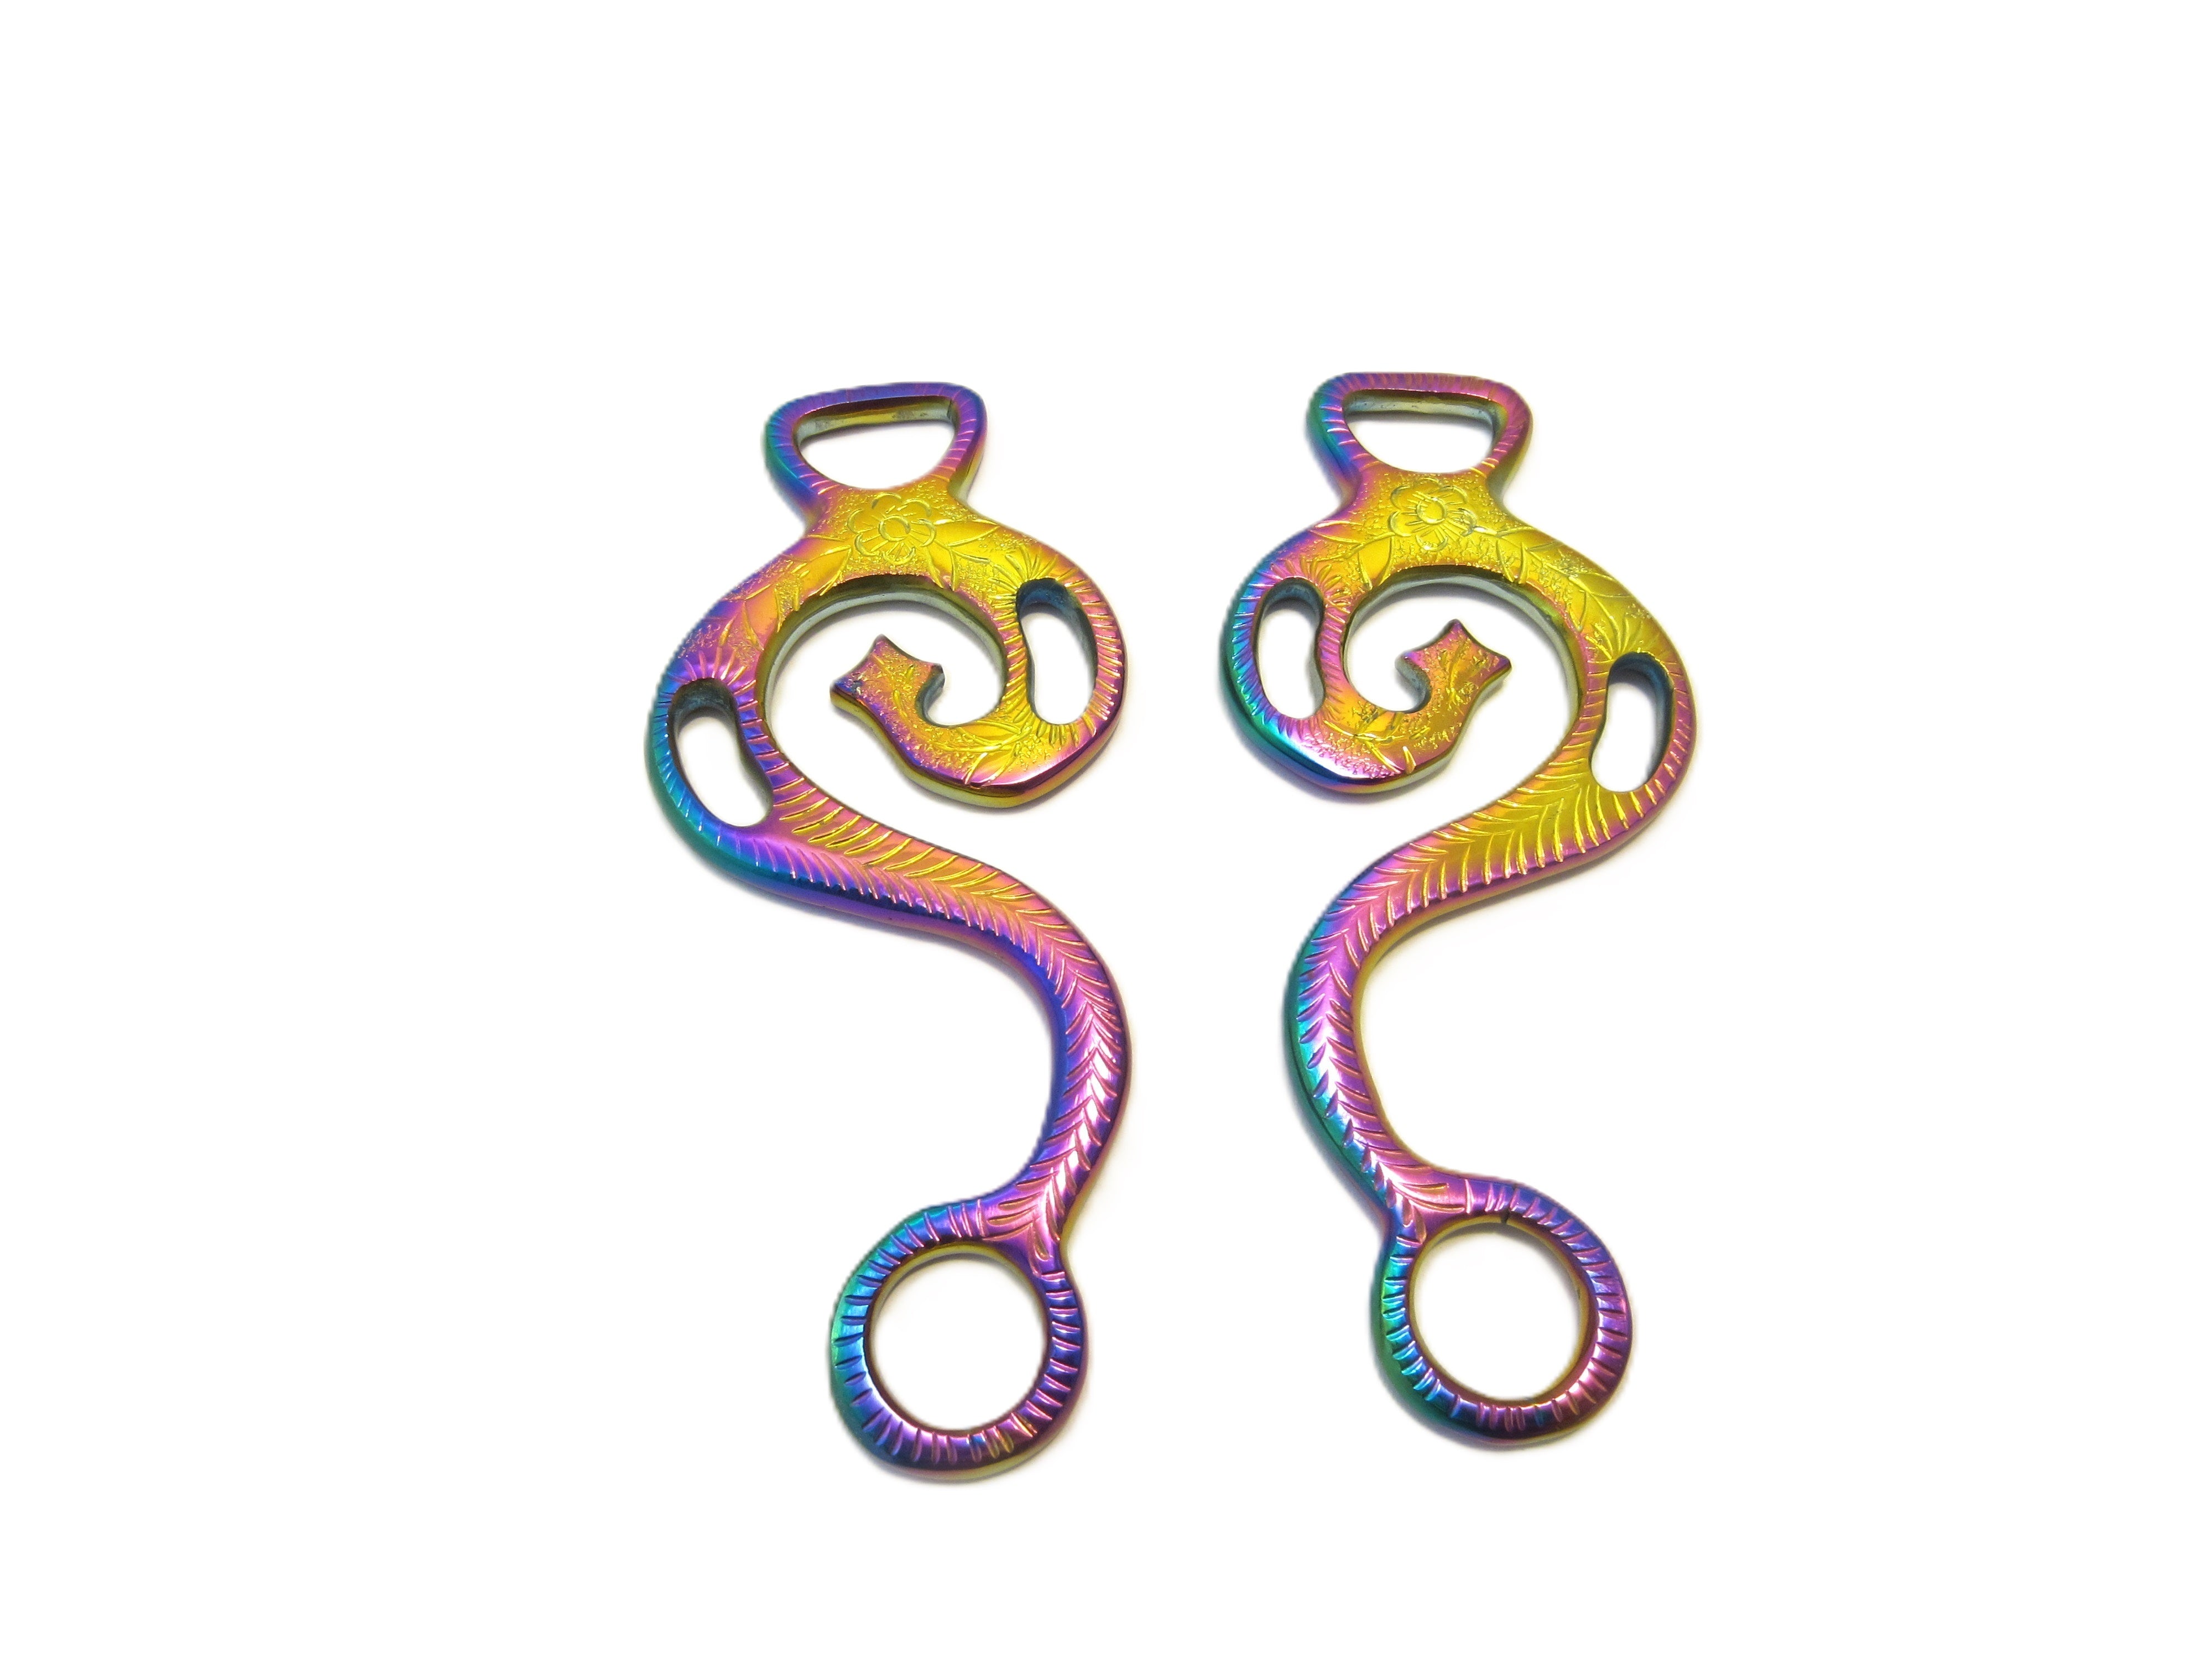 Hackamore "Barock" Regenbogenfarben, multicolour rainbow - 1 Paar Schenkel, verziert